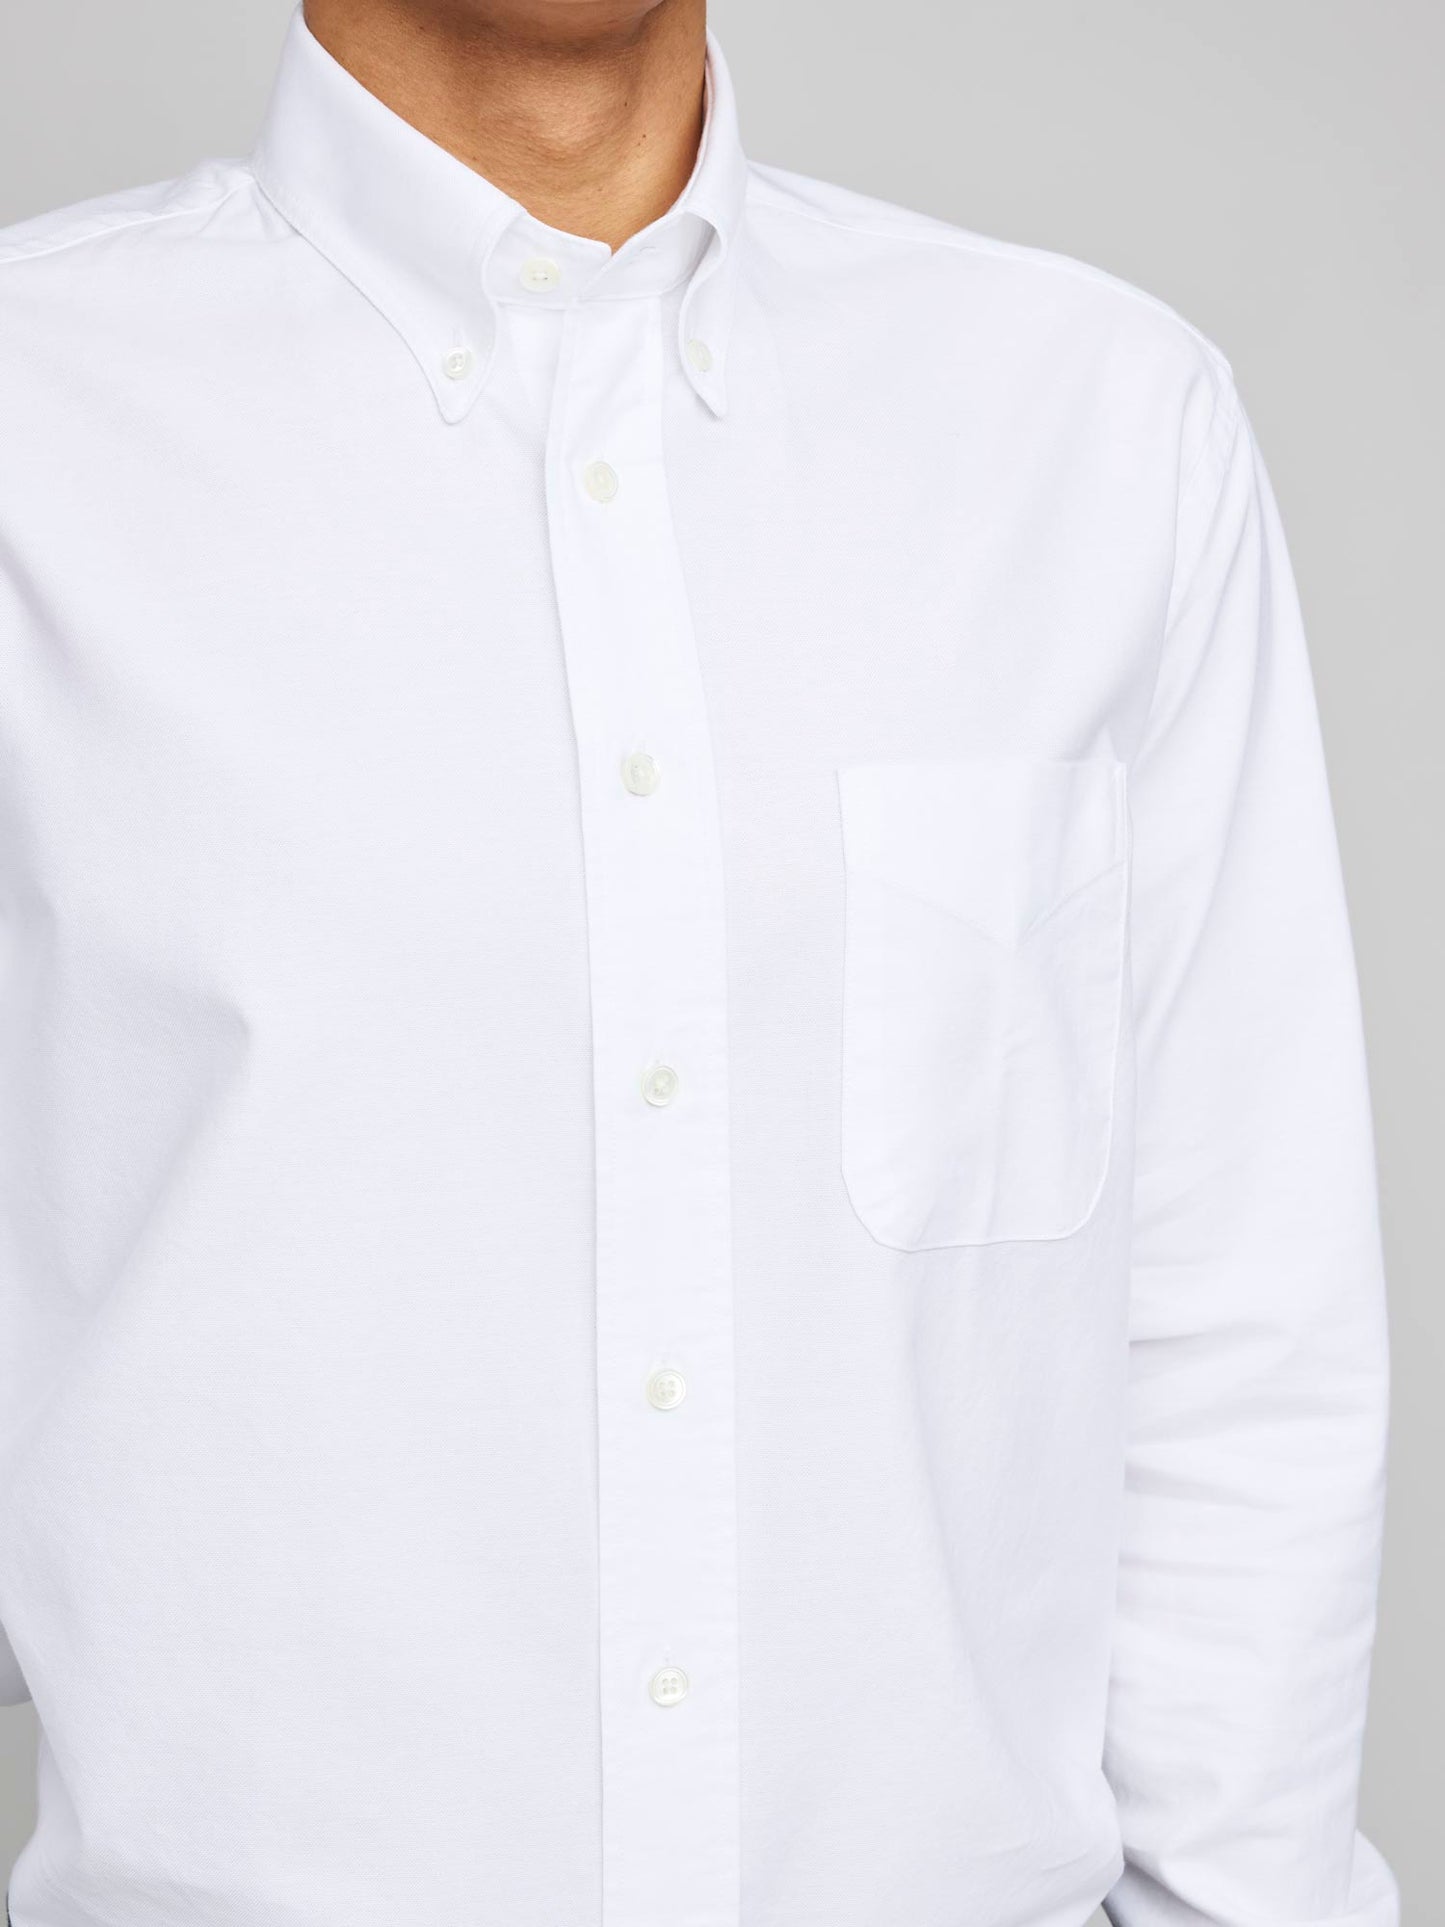 American BD Oxford Shirt, White